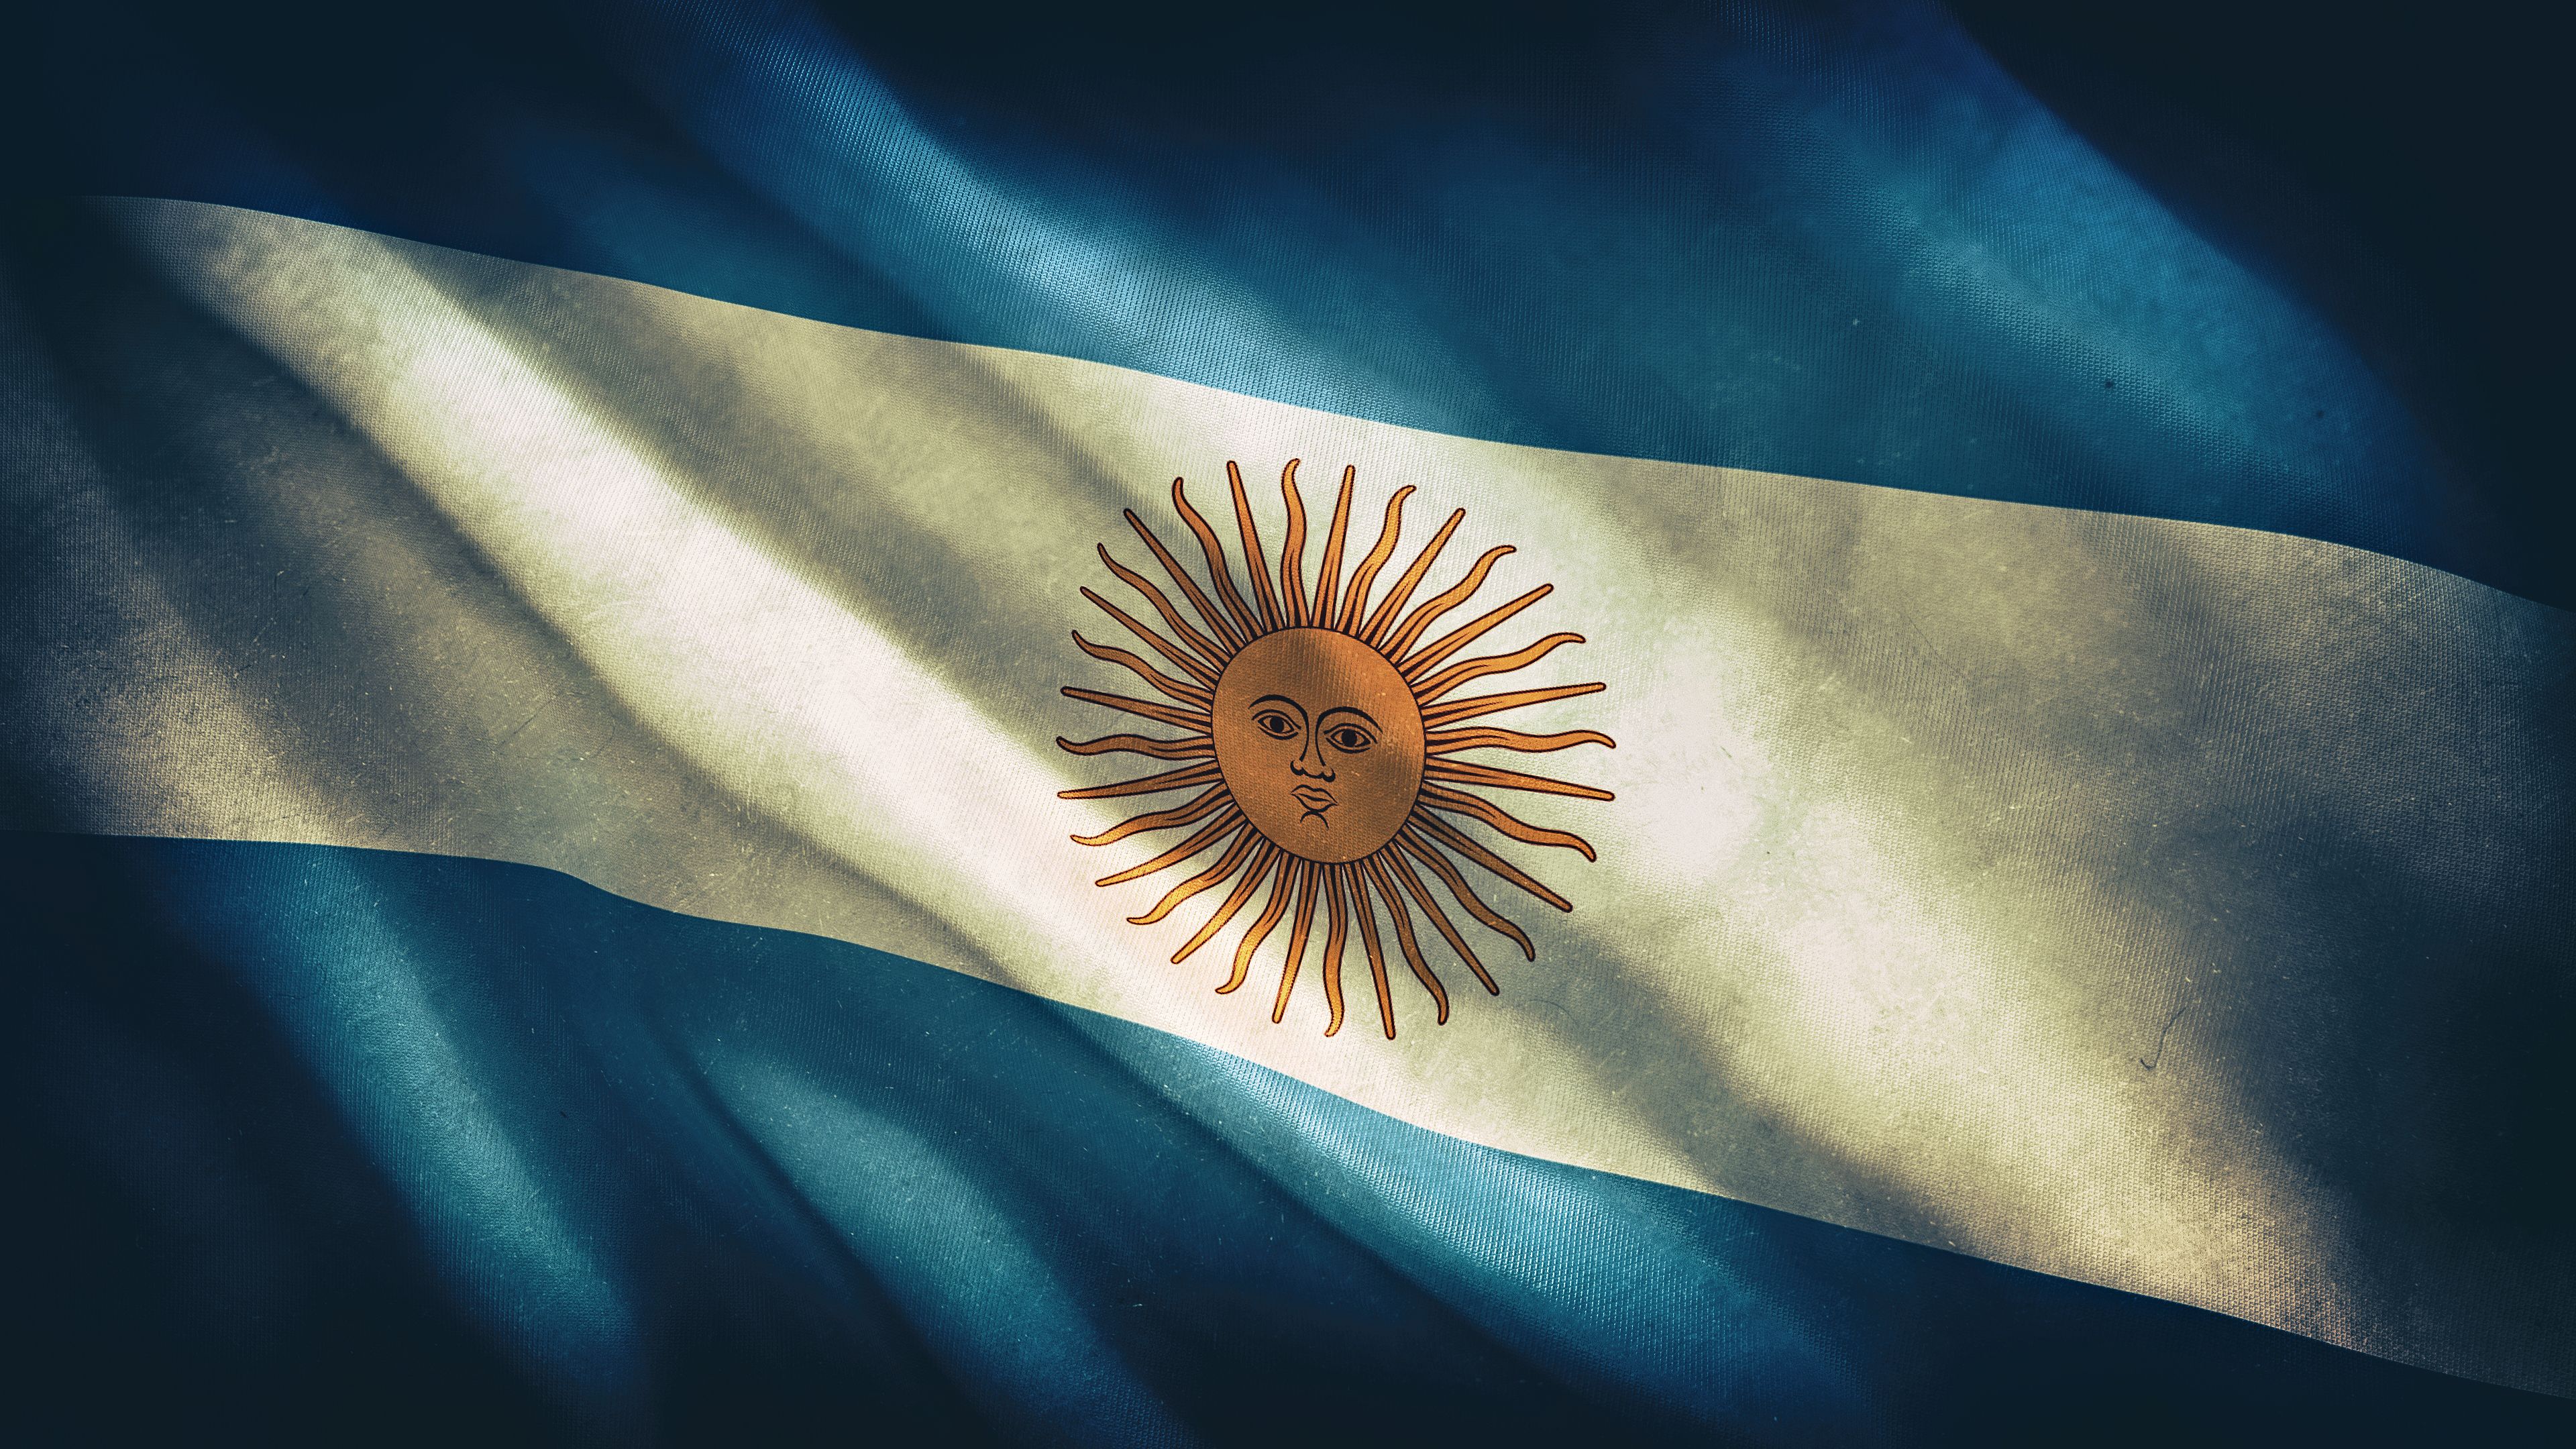 Fondos de pantalla: 3840x2160 px, Argentina, bandera 3840x2160 - wallpaperUp